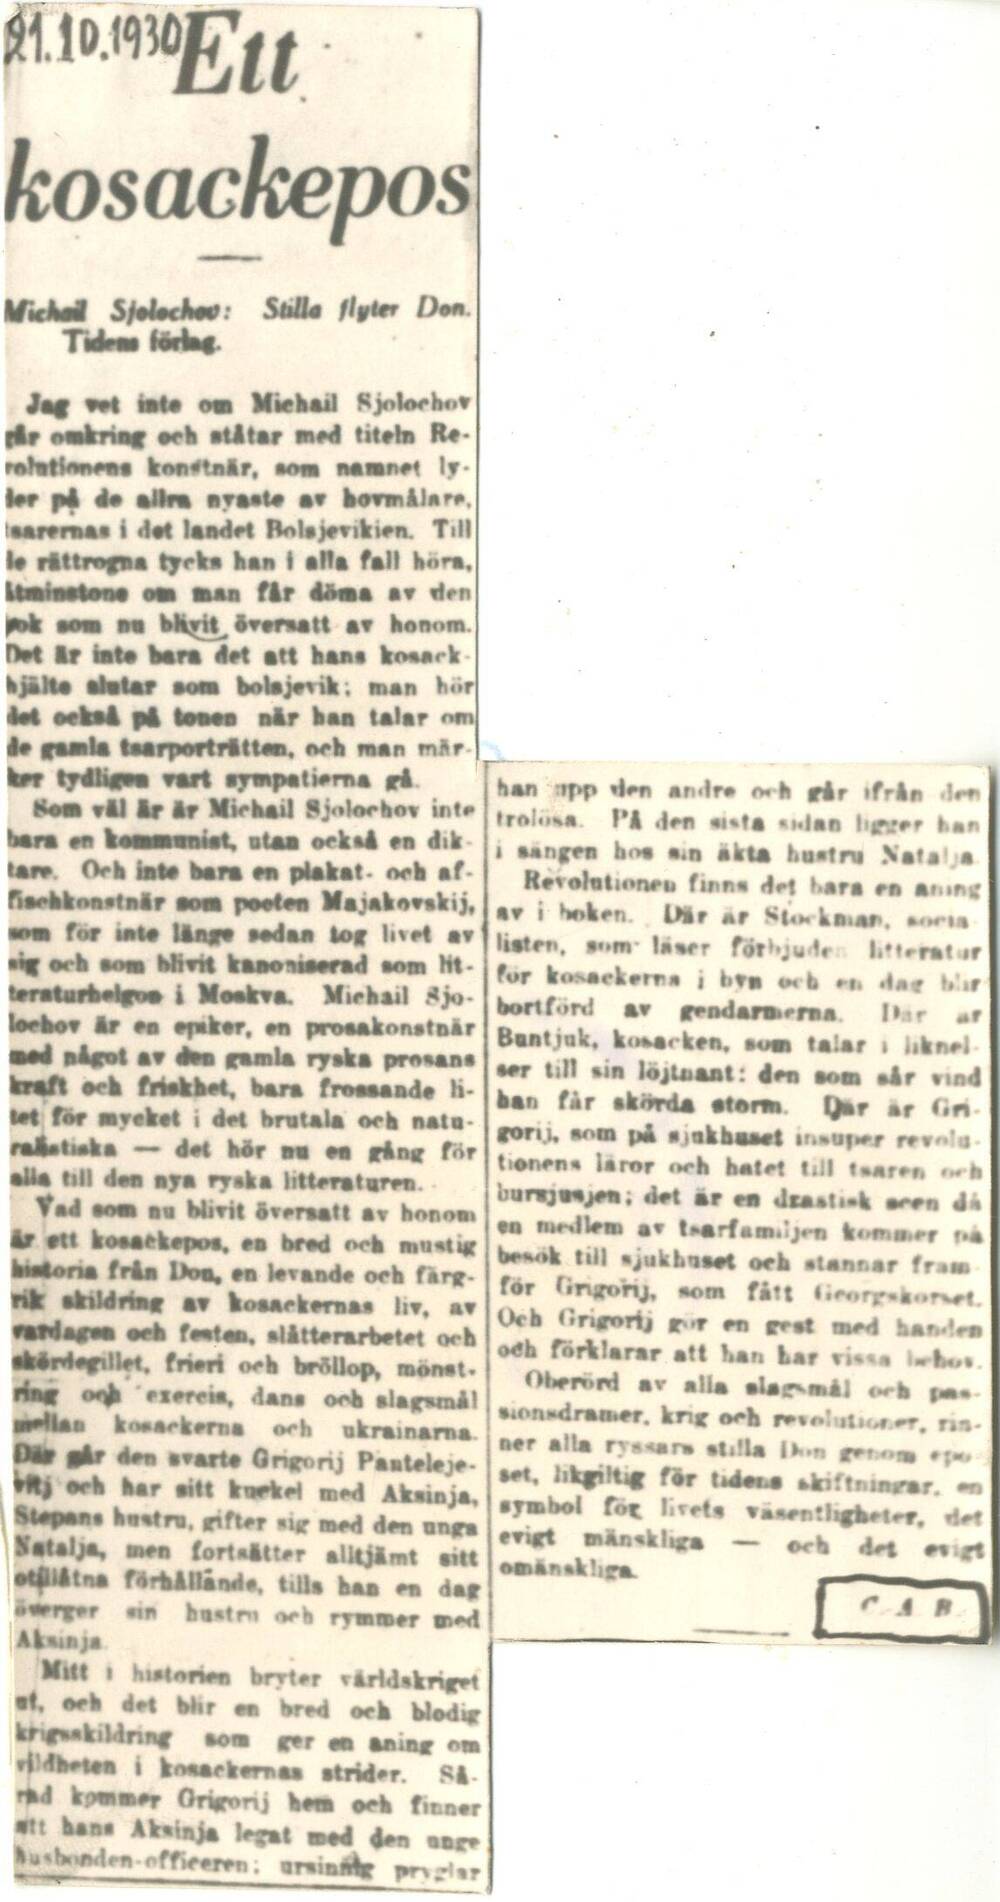 Вырезка копии статьи Эпос о казаках из газеты Dagens Nyheter от 21.10.1930.